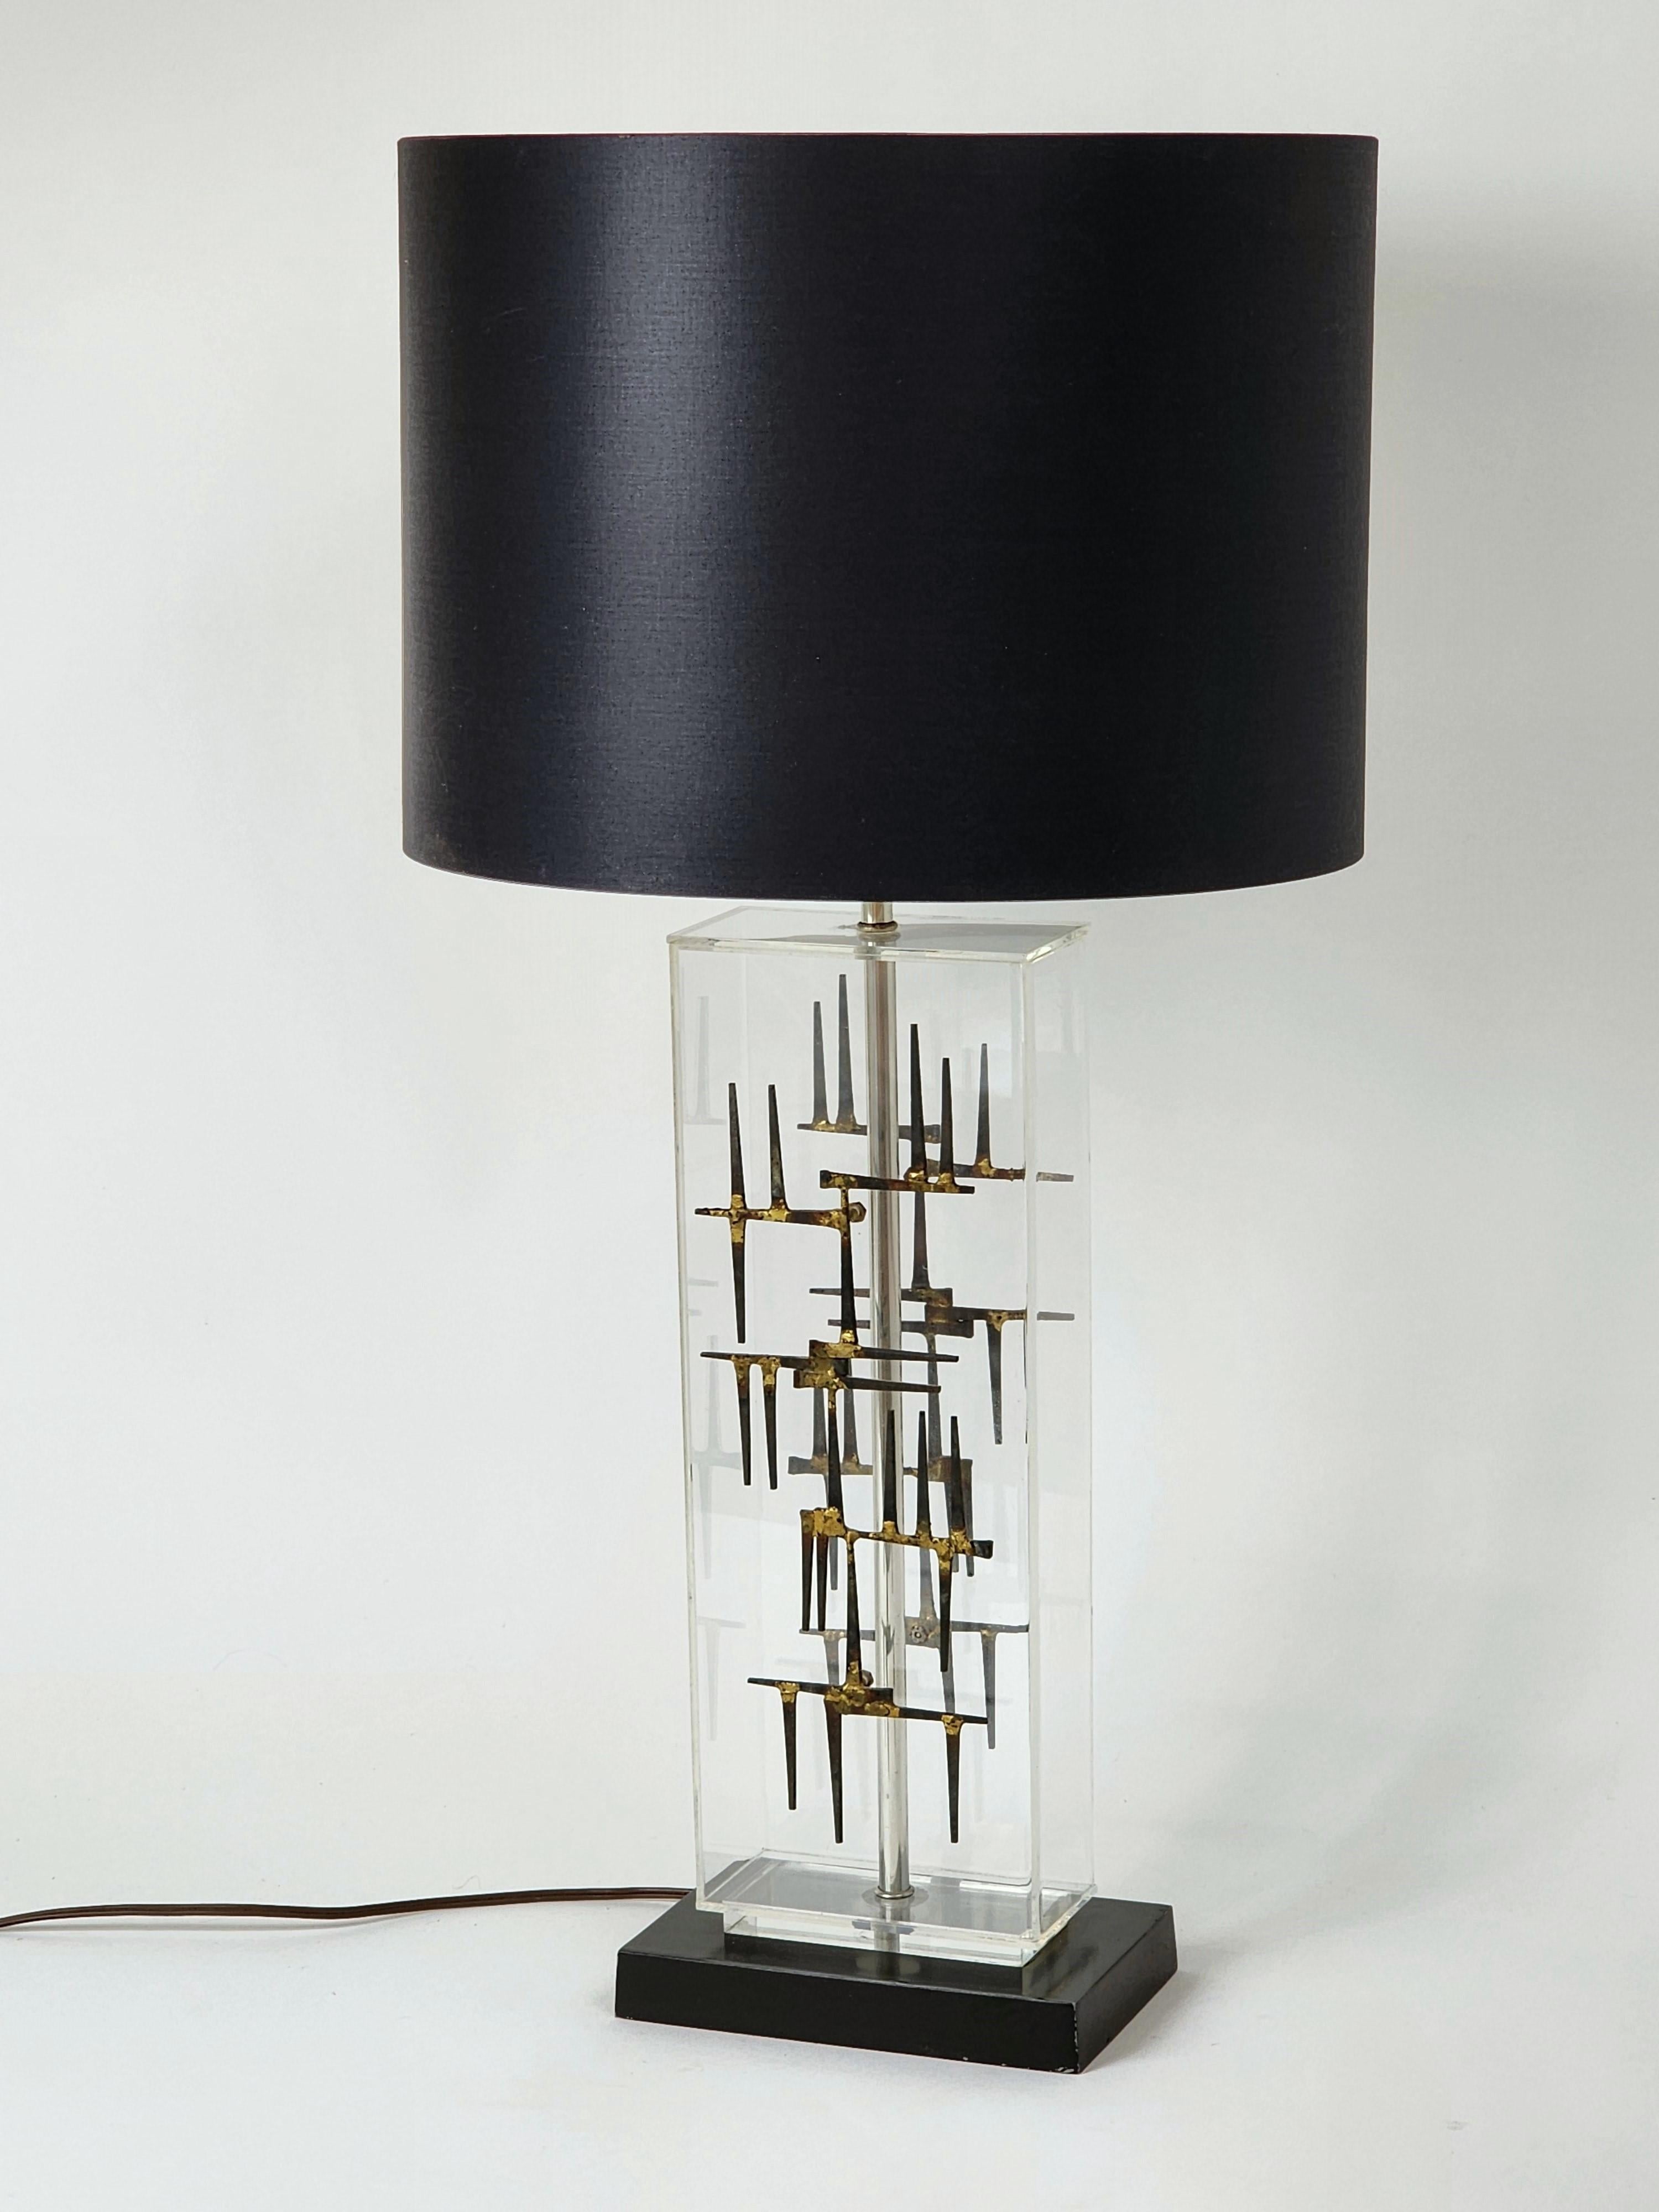 Rare ' Laurel ' lampe de table brutaliste en bois  clou coupé monté sur une feuille acrylique transparente . 

A  agréable ,  audacieux  toucher  de  la modernité mêlée à la  clou brut sculptural en laiton soudé qui semble suspendu dans l'air sous